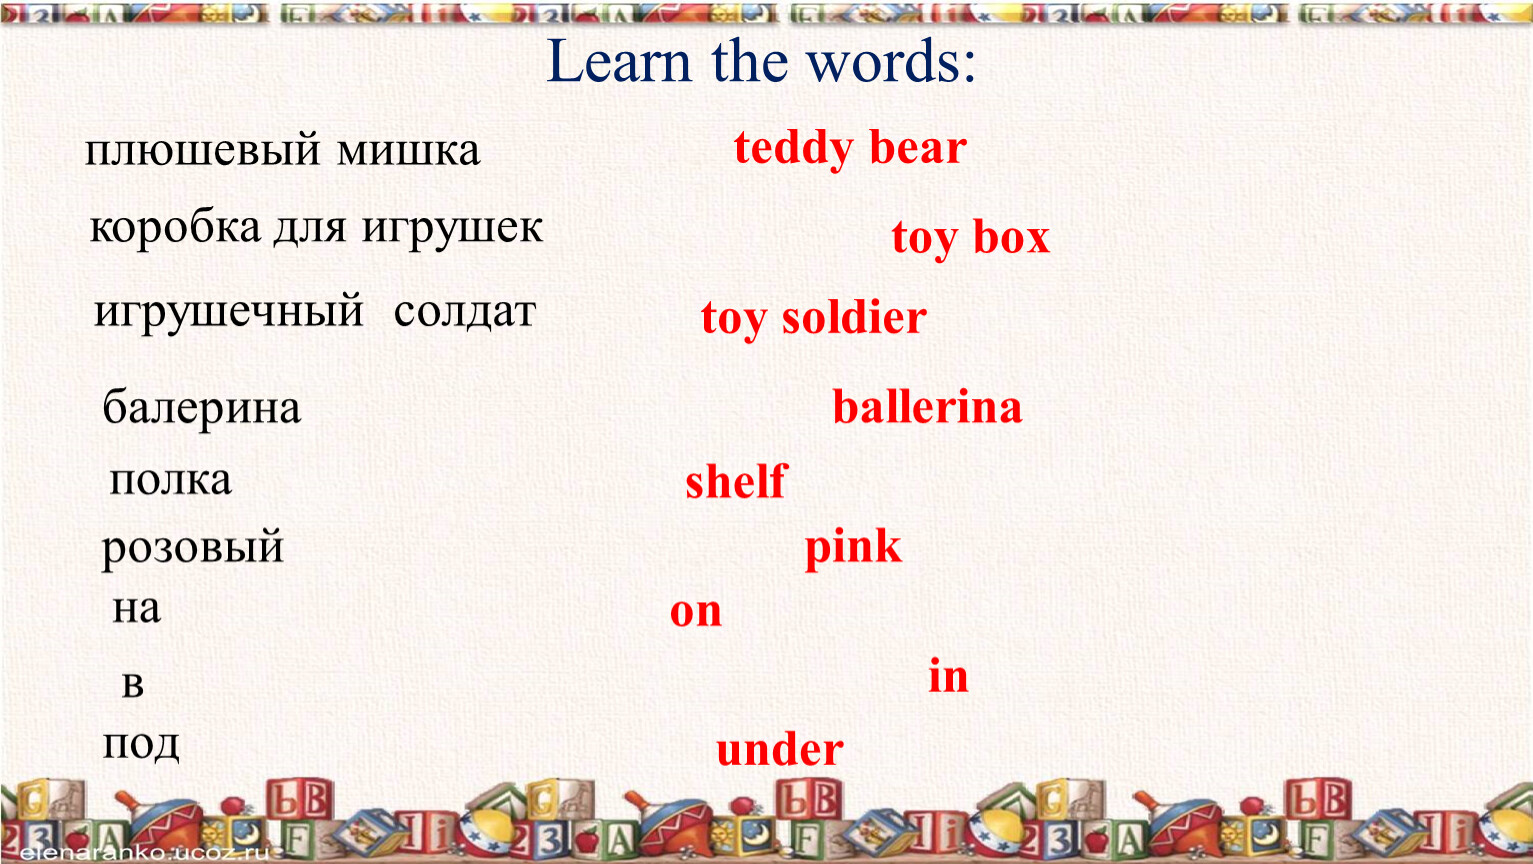 Teddy перевод с английского на русский. Toy Soldier спотлайт. Toy Soldier транскрипция. Транскрипция английских слов плюшевый мишка. Toy Box транскрипция.